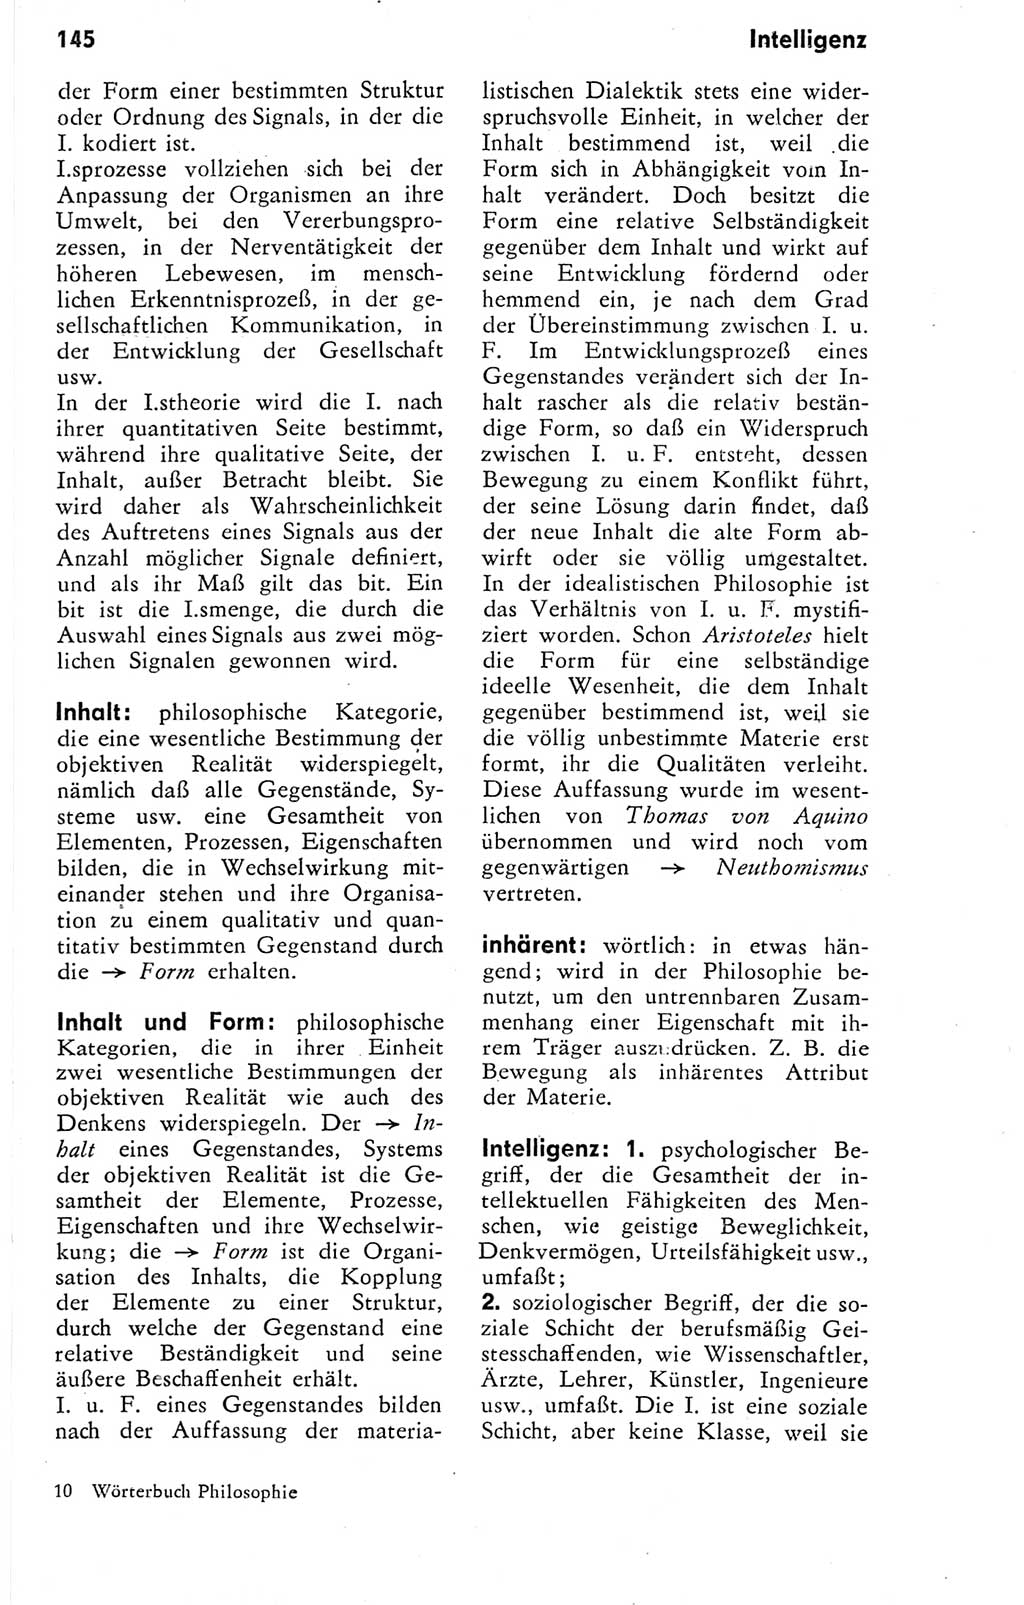 Kleines Wörterbuch der marxistisch-leninistischen Philosophie [Deutsche Demokratische Republik (DDR)] 1974, Seite 145 (Kl. Wb. ML Phil. DDR 1974, S. 145)